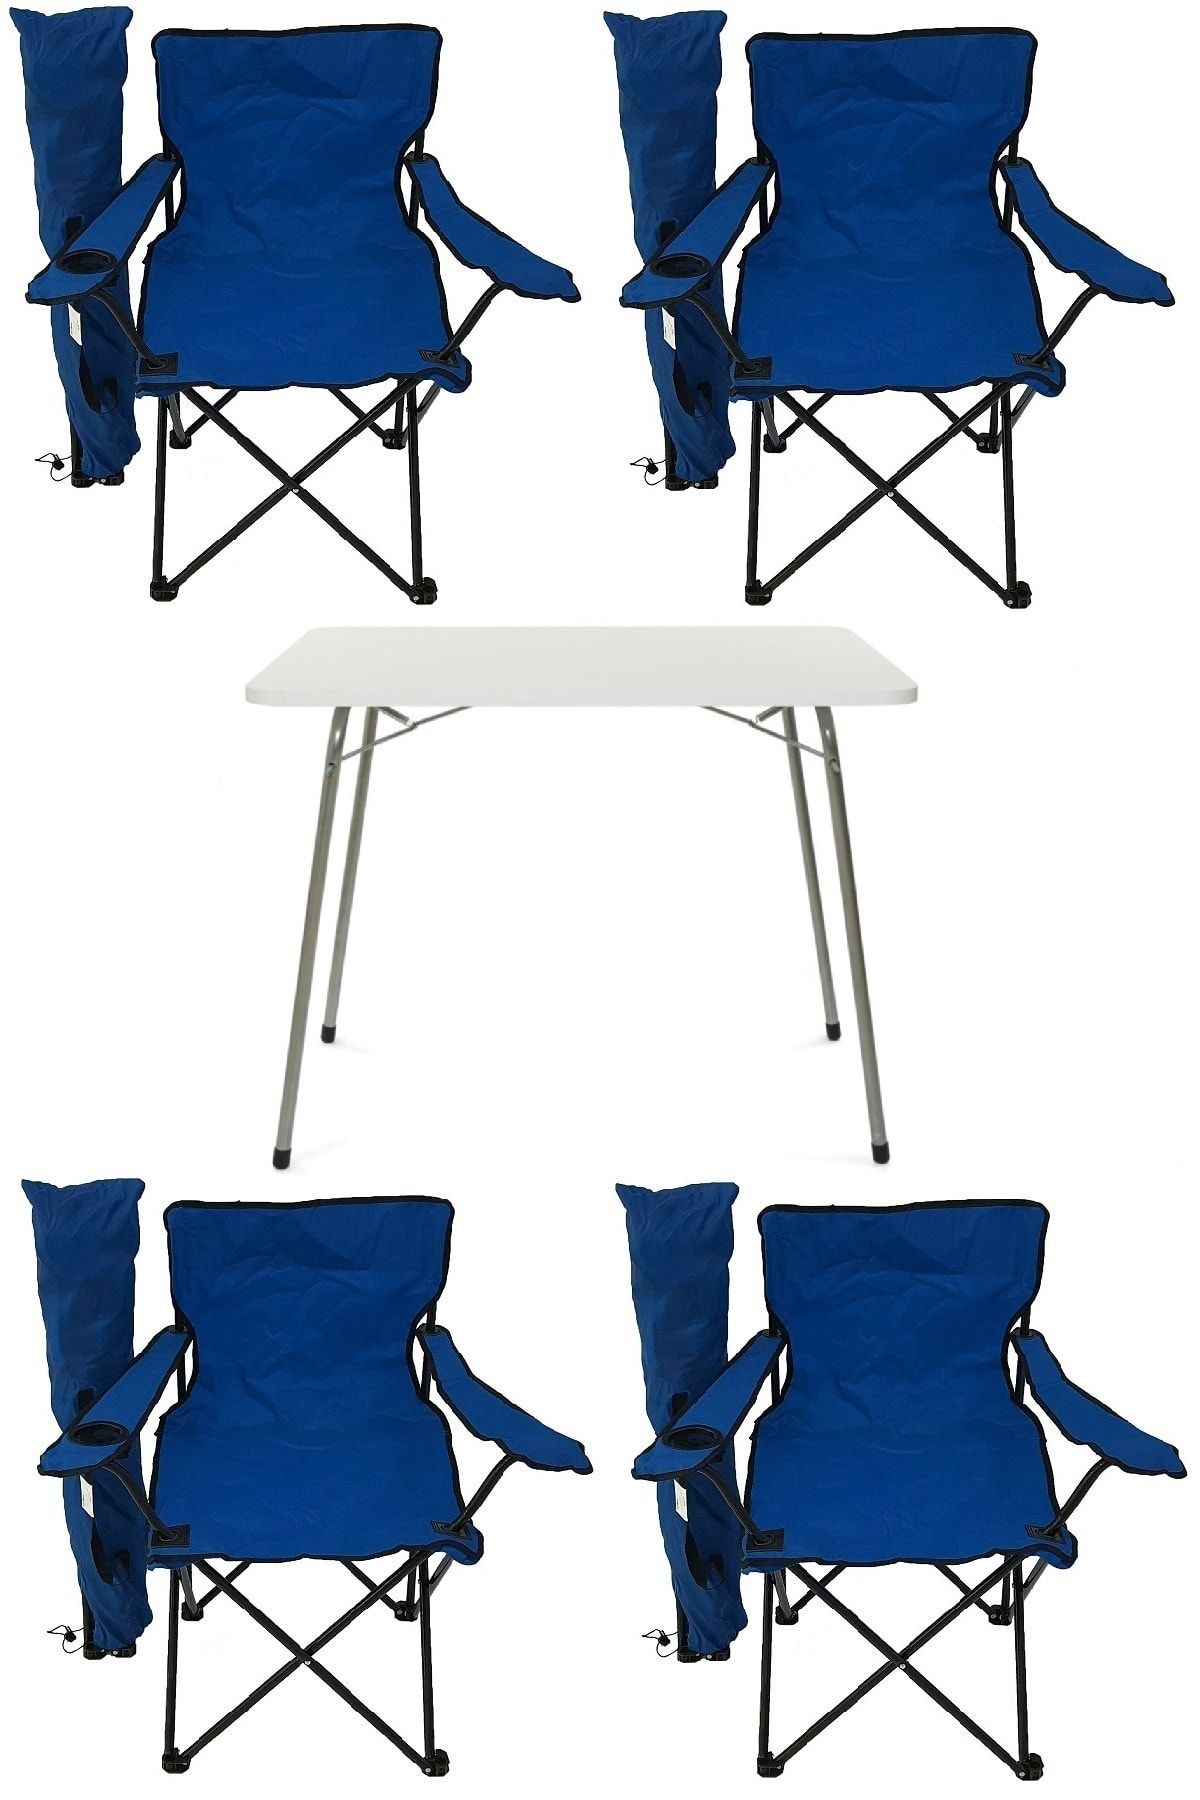 Bofigo 60x80 Katlanır Masa + 4 Adet Kamp Sandalyesi Katlanır Sandalye Piknik Plaj Sandalyesi Mavi